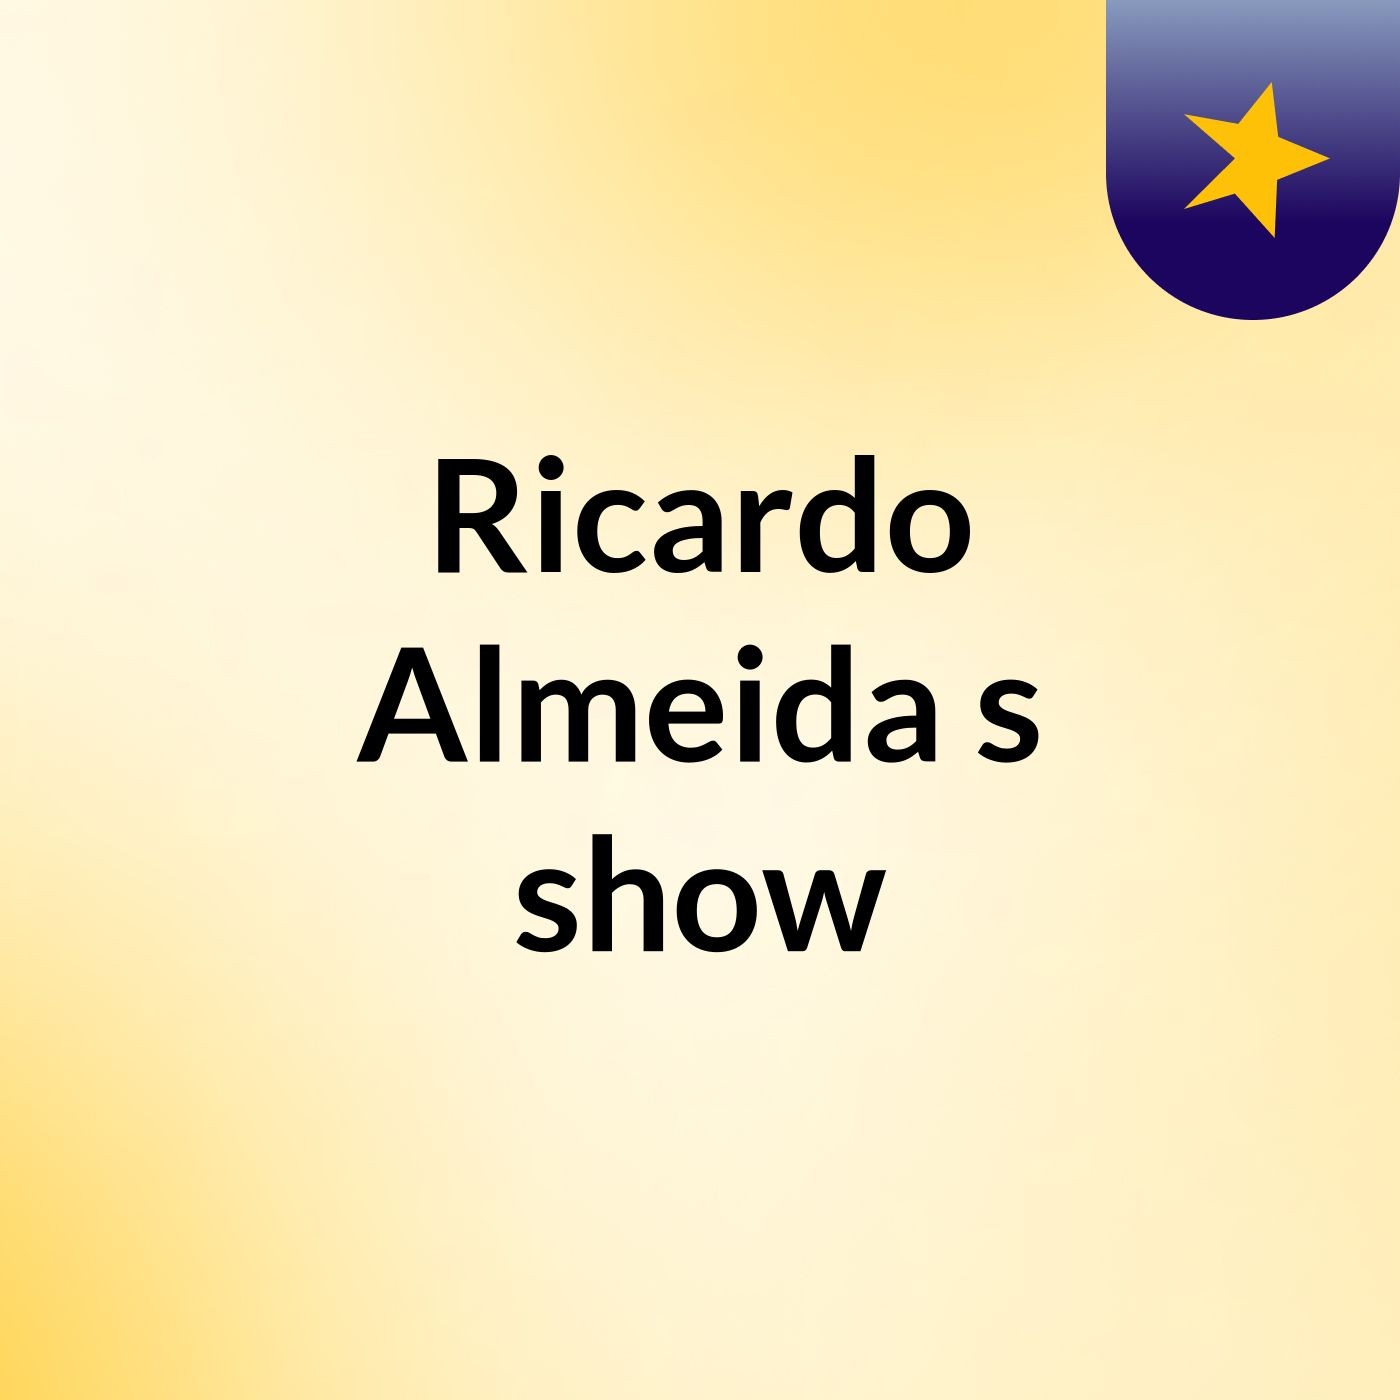 Ricardo Almeida's show